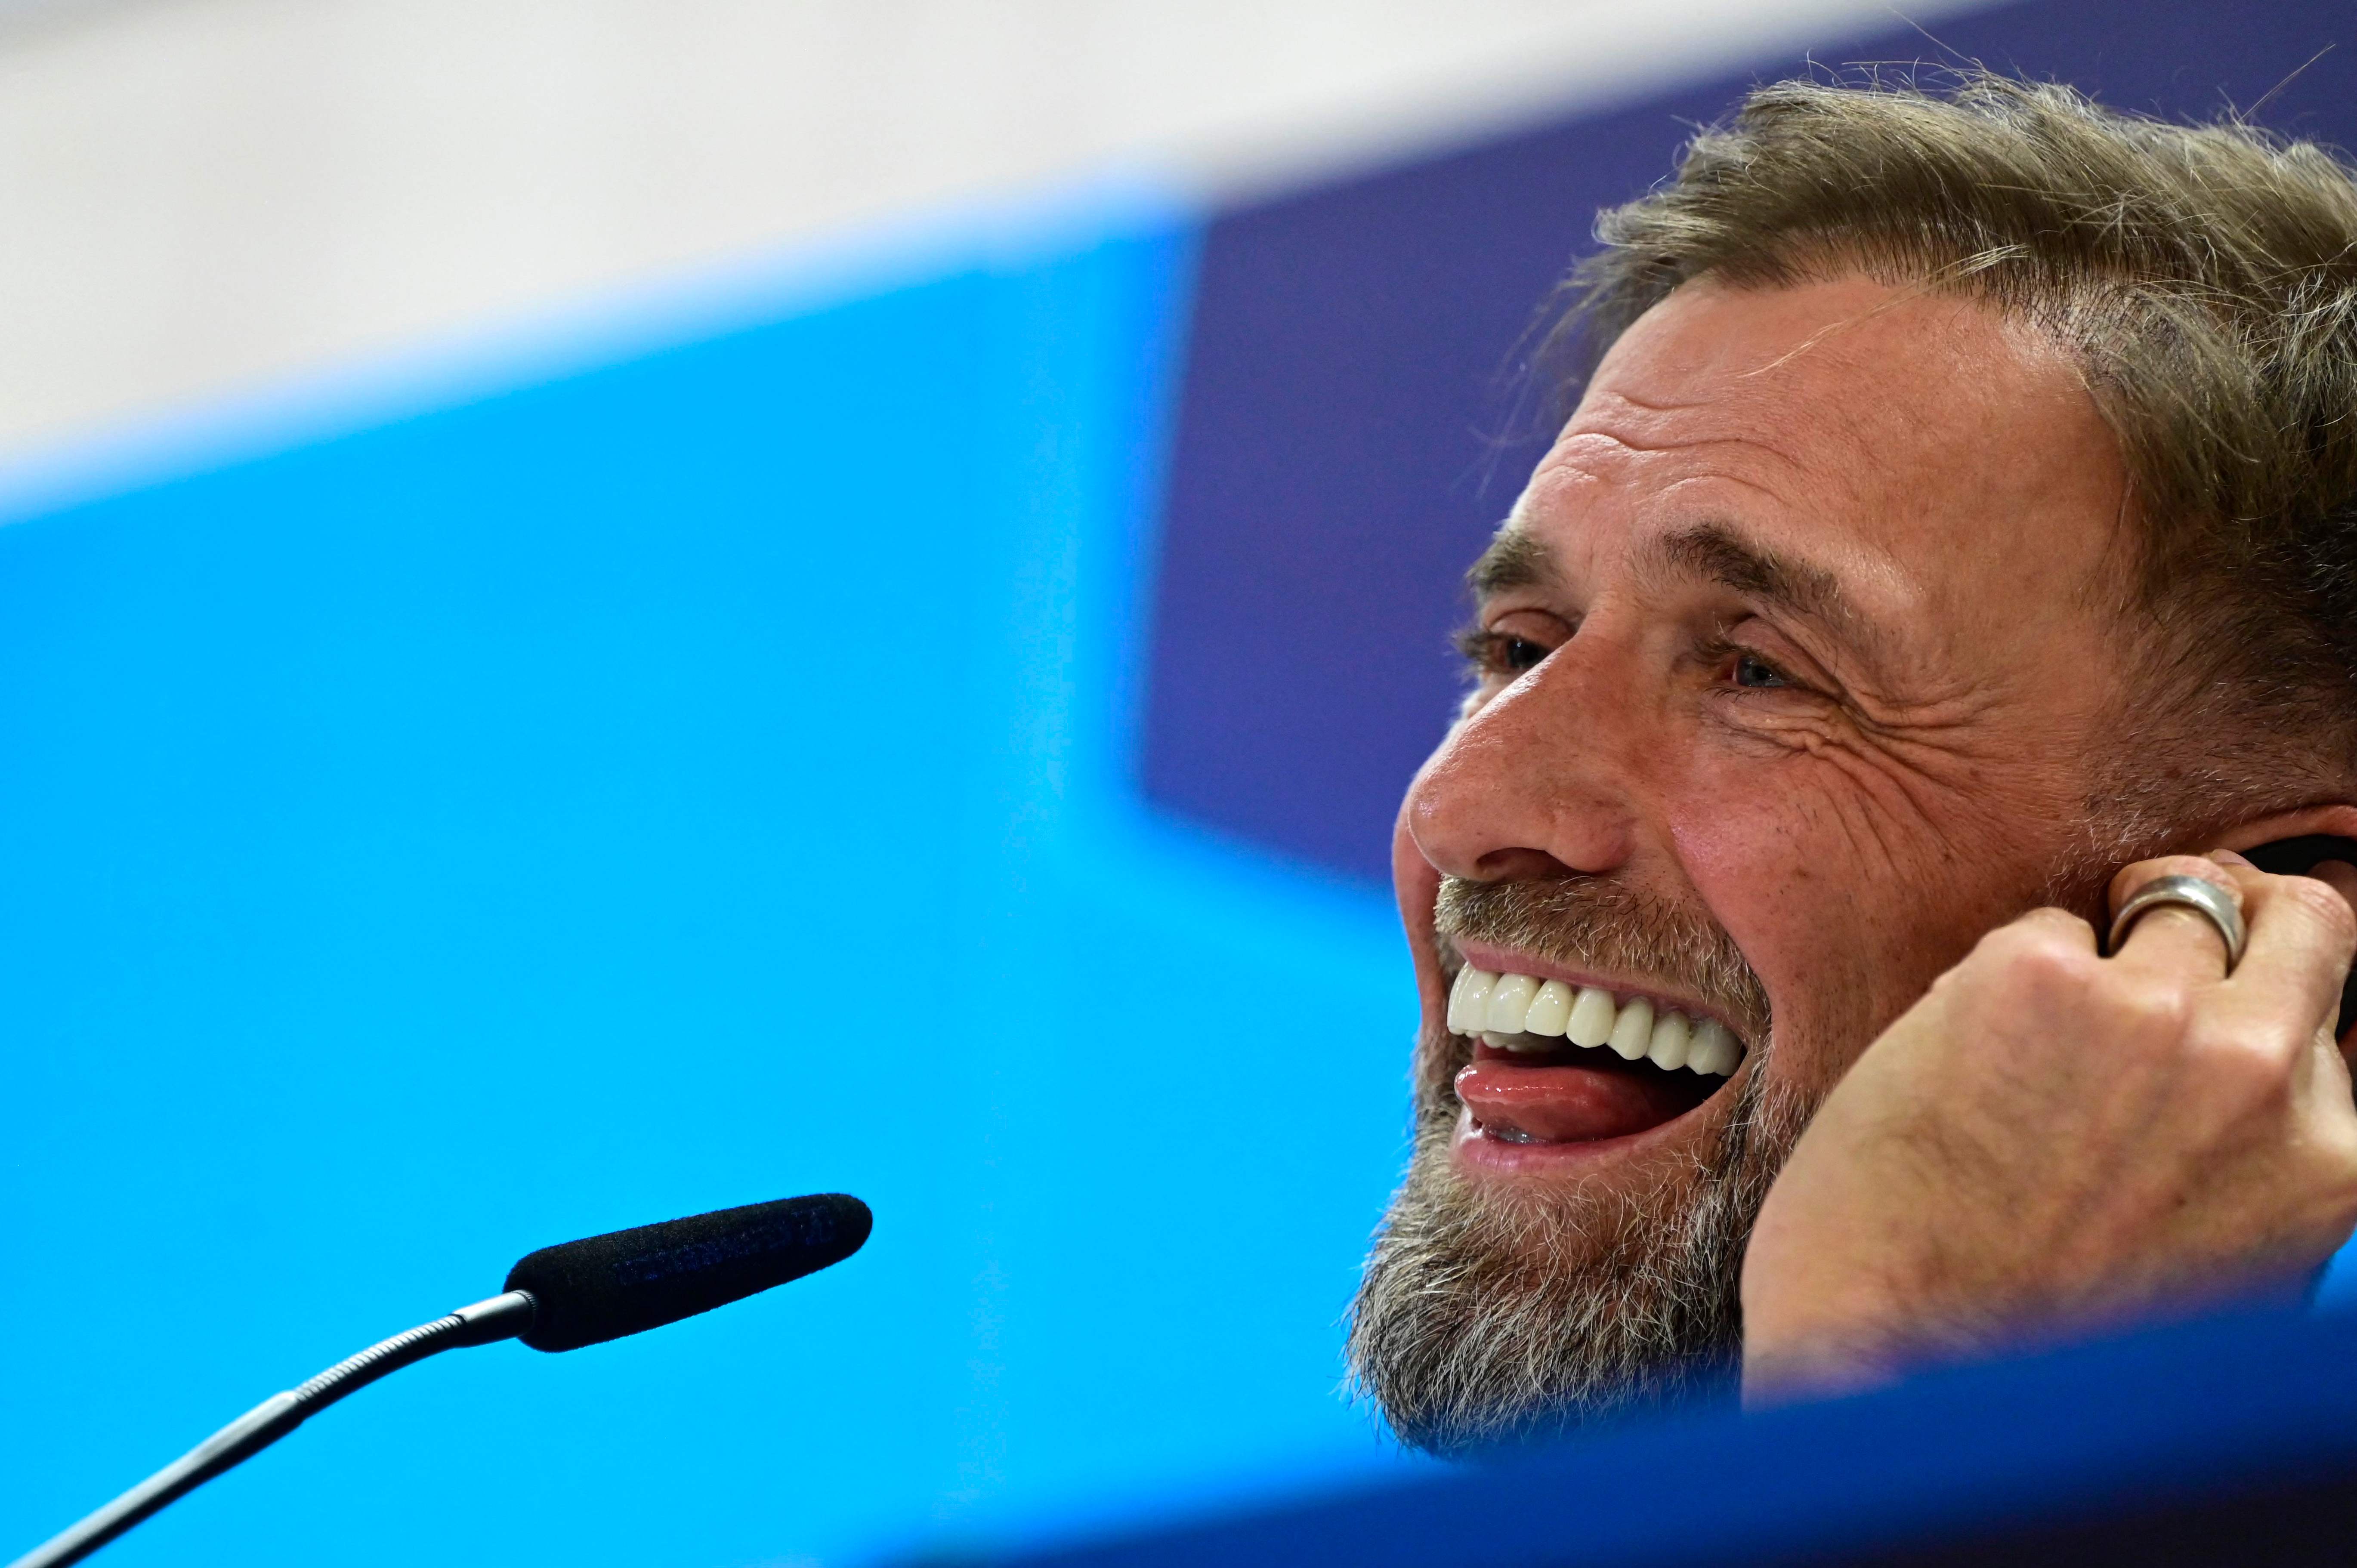 Jürgen Klopp, técnico del Liverpool. (Foto Prensa Libre: AFP)